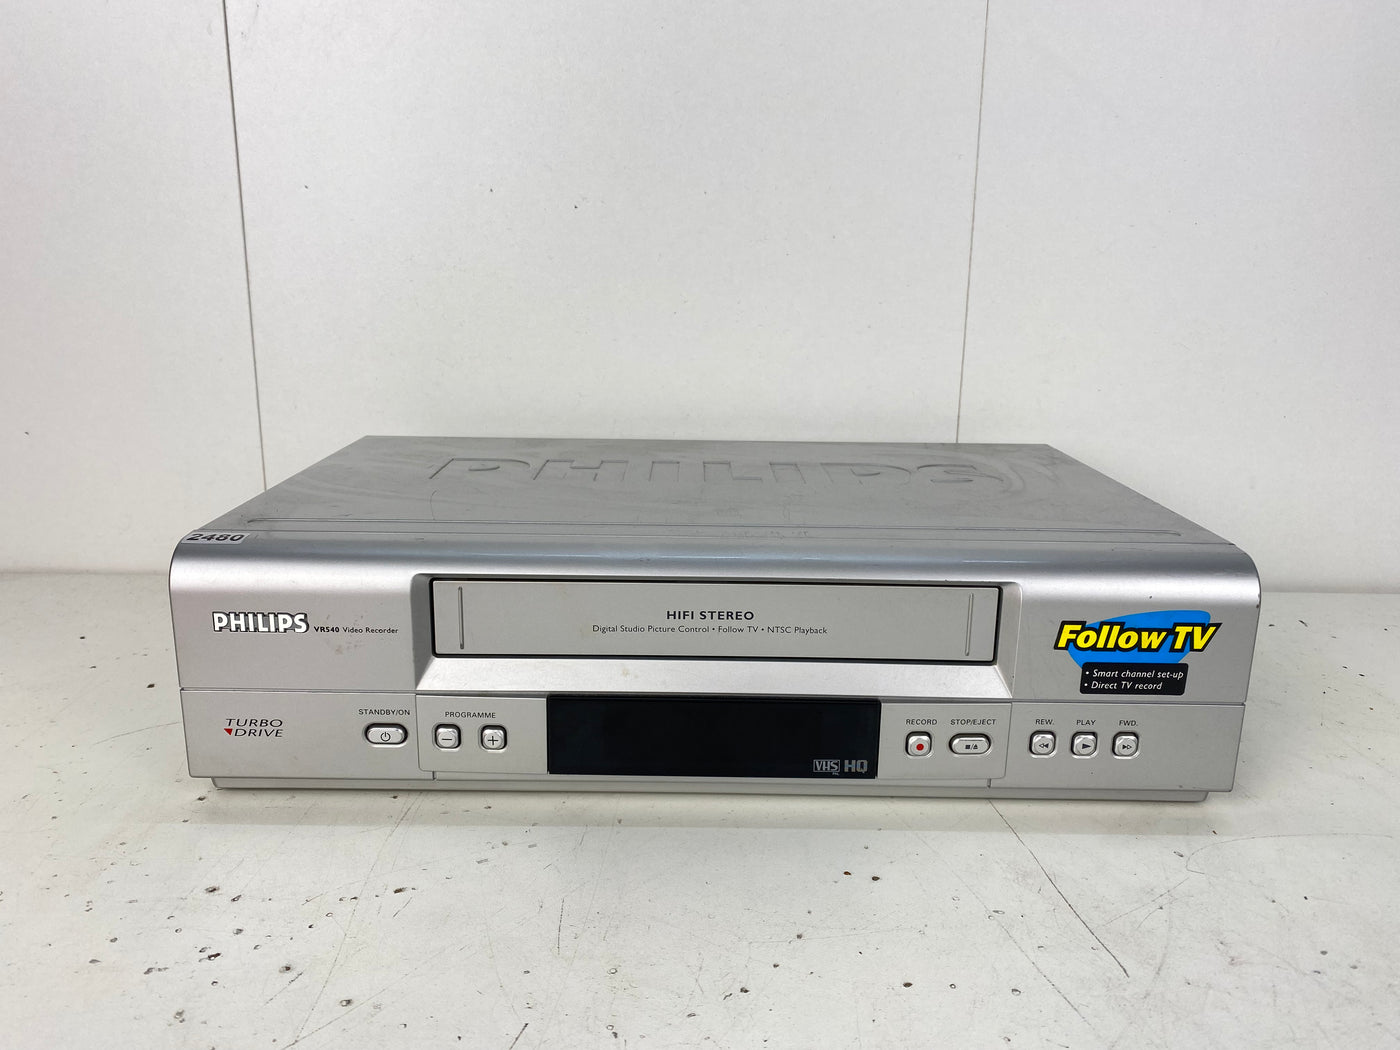 Philips VR540 Video Cassette Recorder VHS